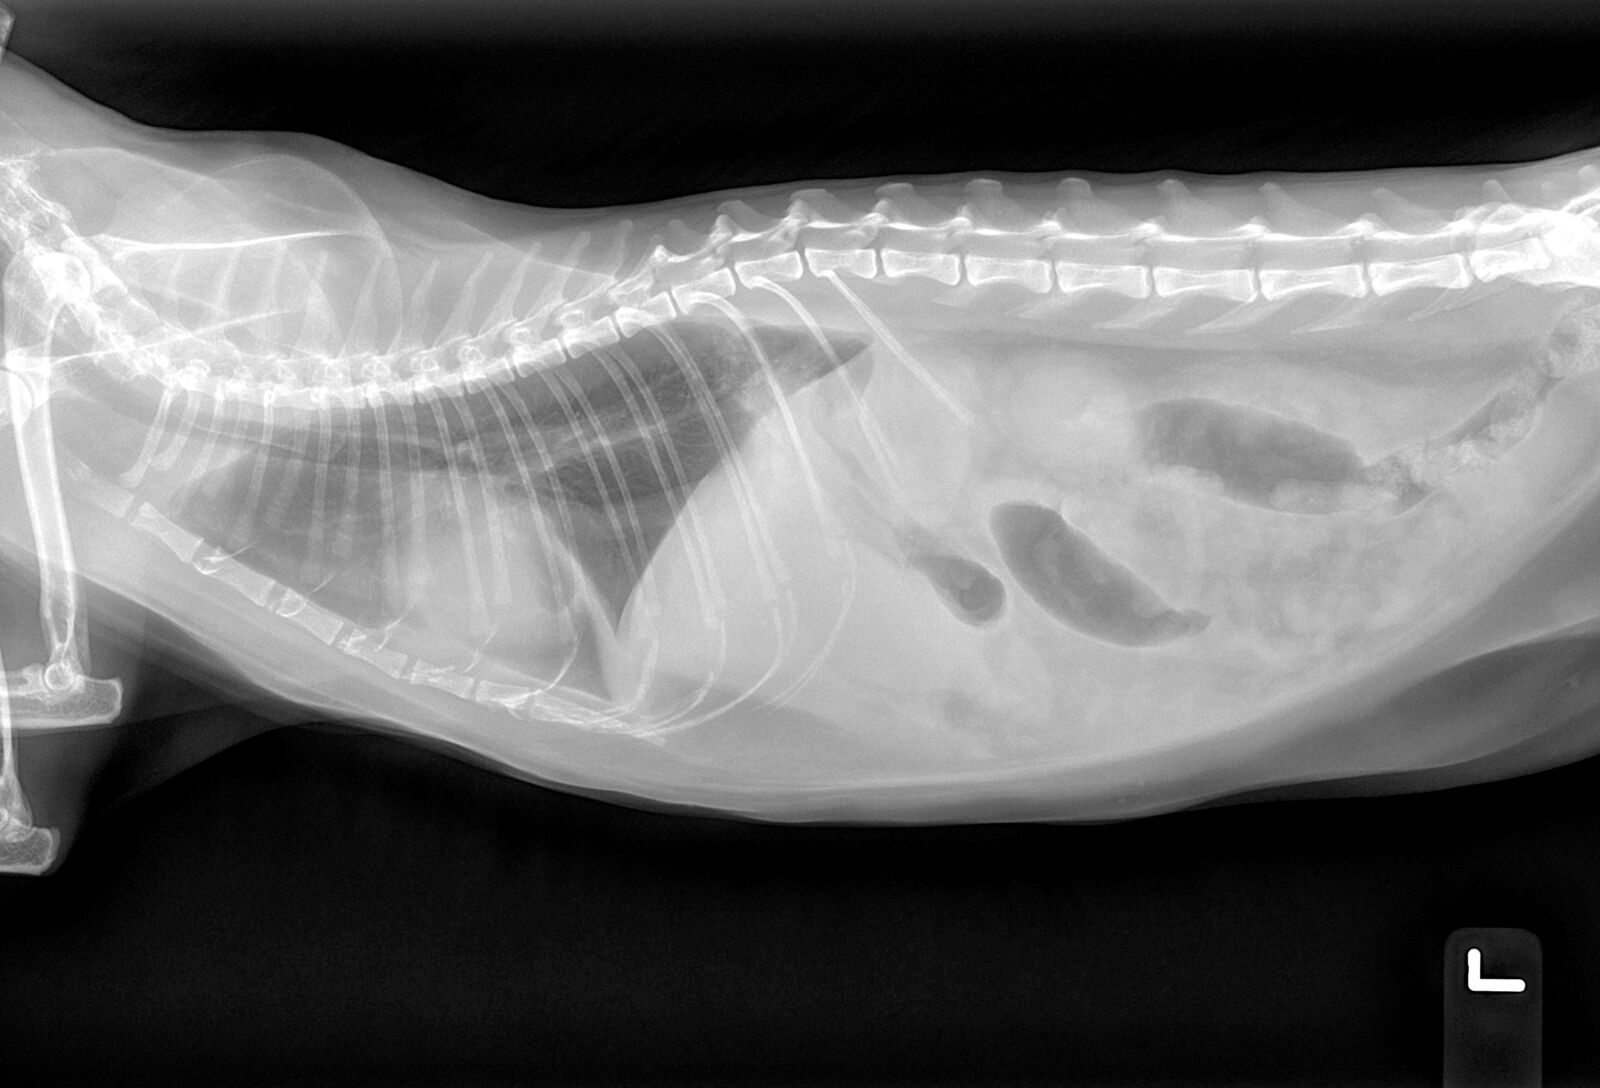 Diese laterale Röntgenaufnahme einer Katze zeigt einen Verlust der Serosadetails in der Bauchhöhle. Ein Pleuraerguss, eine offensichtliche Kardiomegalie oder eine Hepatomegalie sind dagegen nicht zu erkennen.